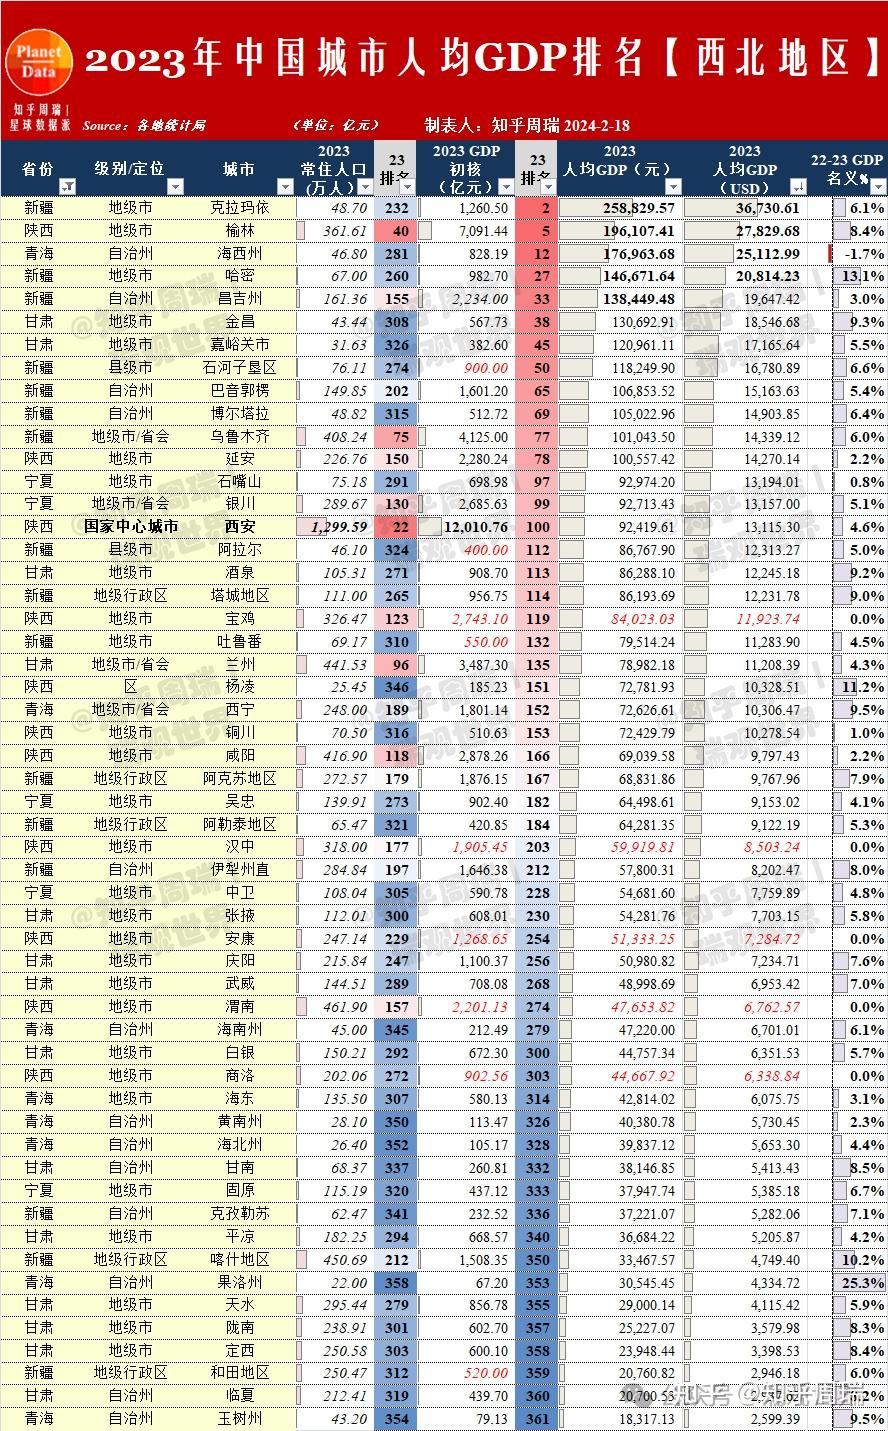 中国人均gdp排名图片